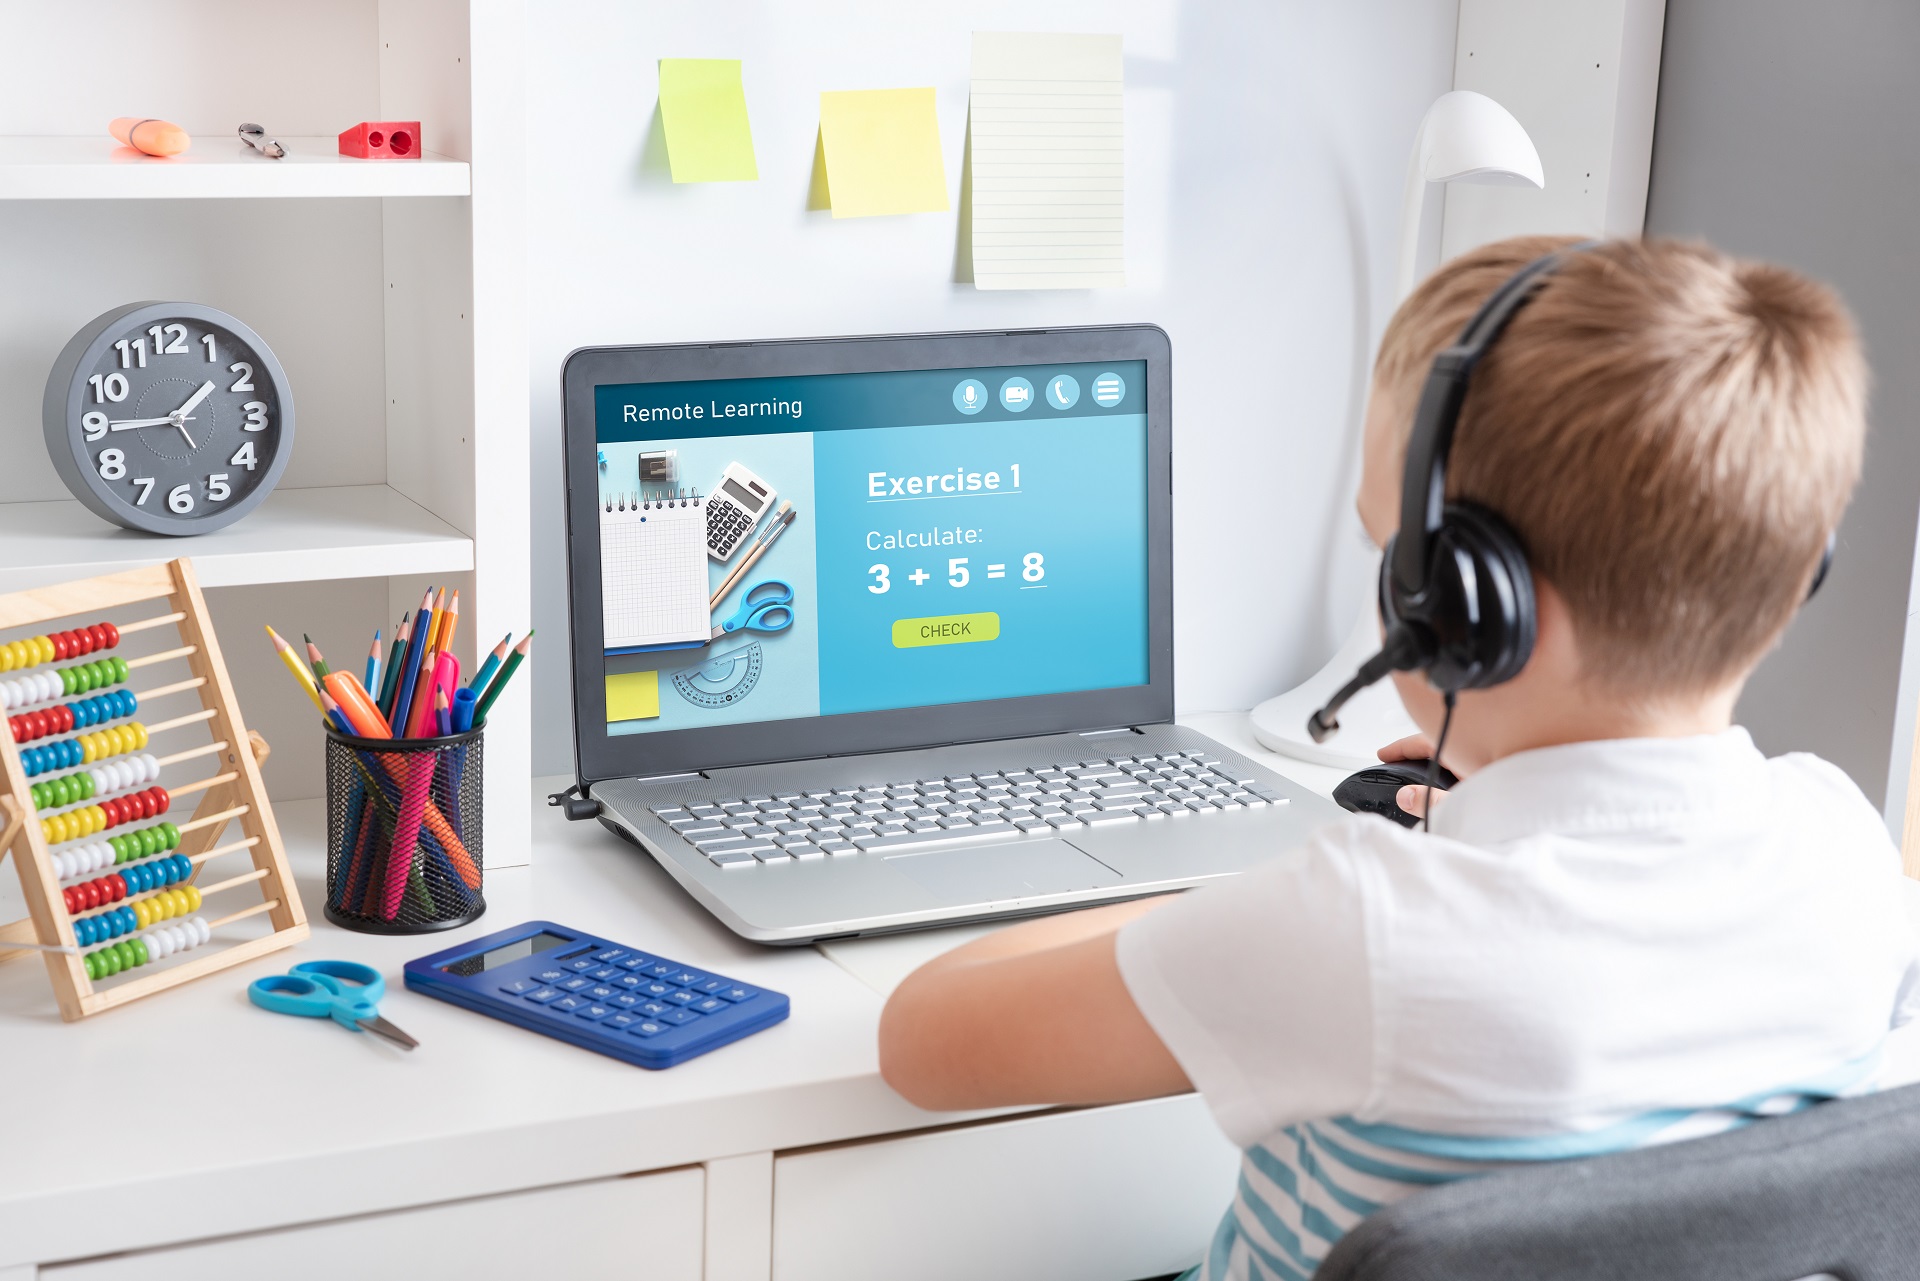 Ein Junge sitzt konzentriert in seinem Kinderzimmer vor einem Laptop. Auf dem Bildschirm ist das Wort "Remote Learning" zu sehen, was auf das virtuelle Lernen hinweist.